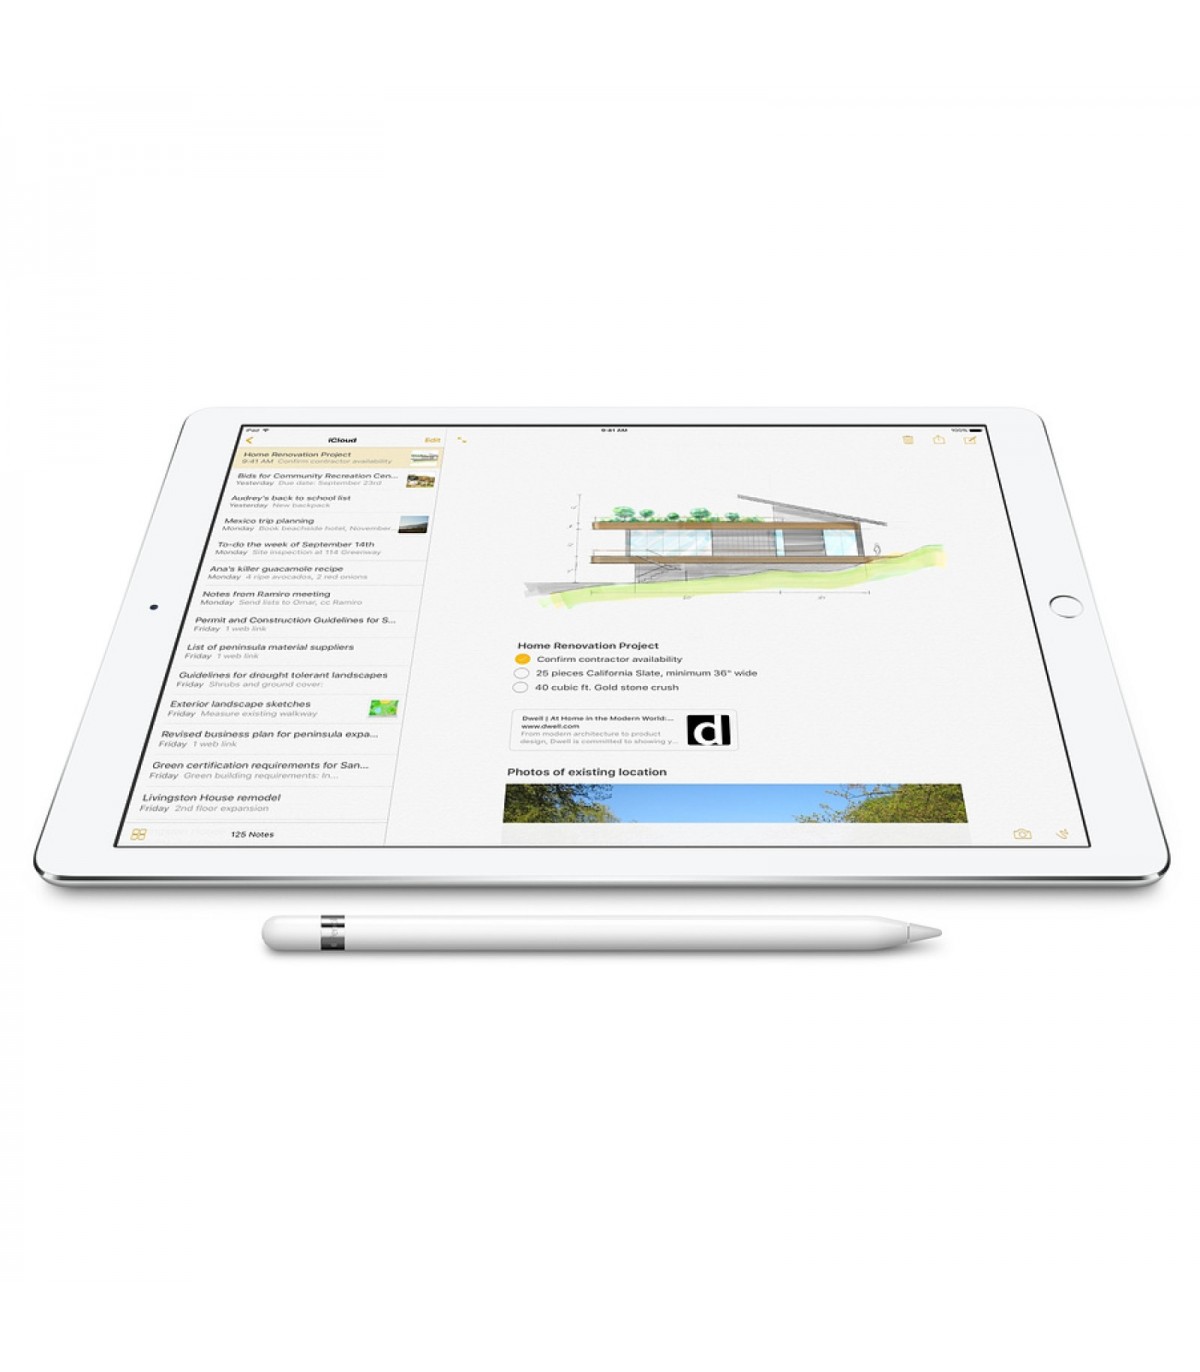 iPad -- Apple la Réunion